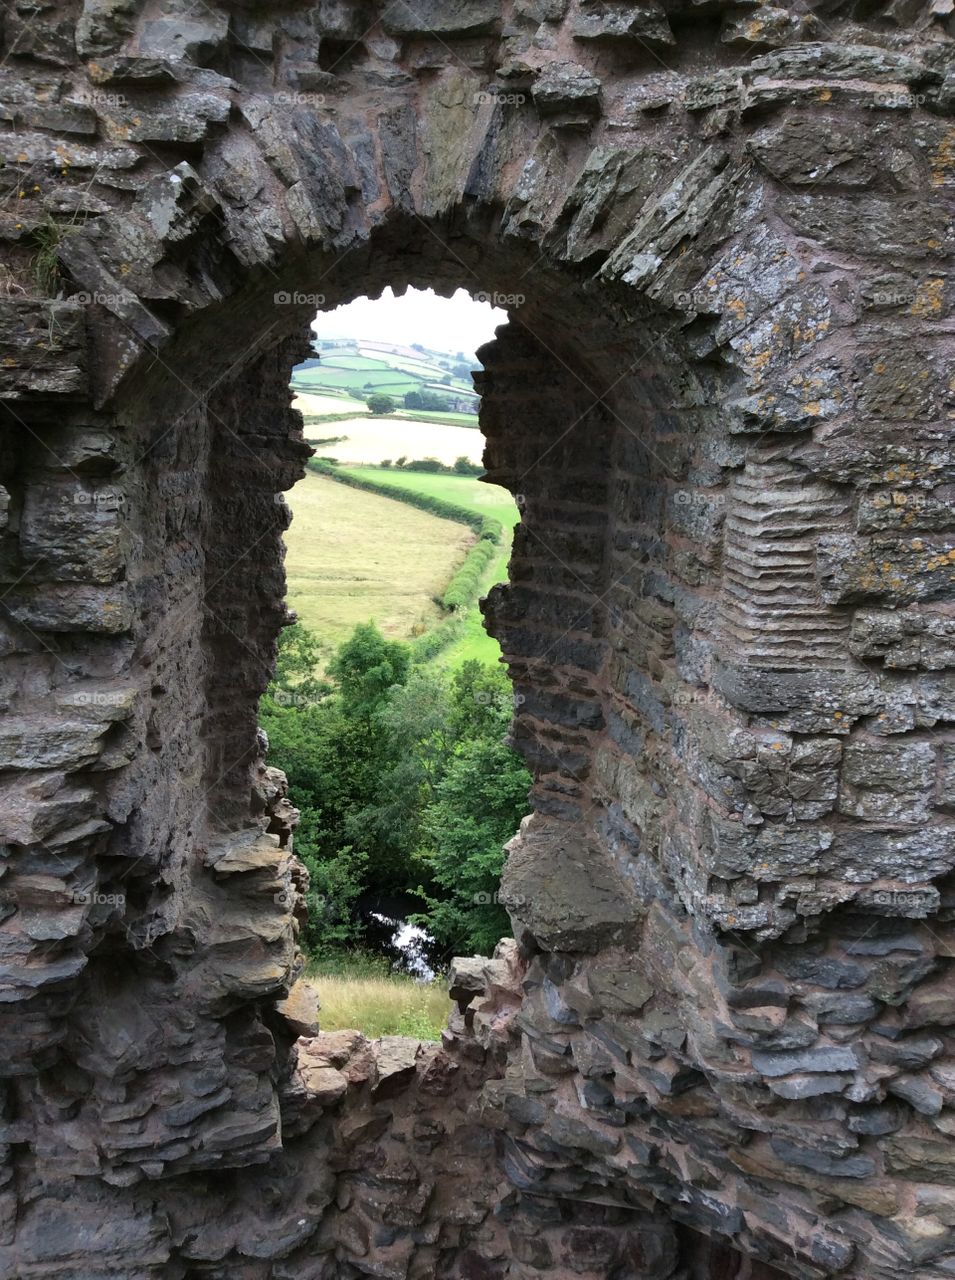 Through the stone window 